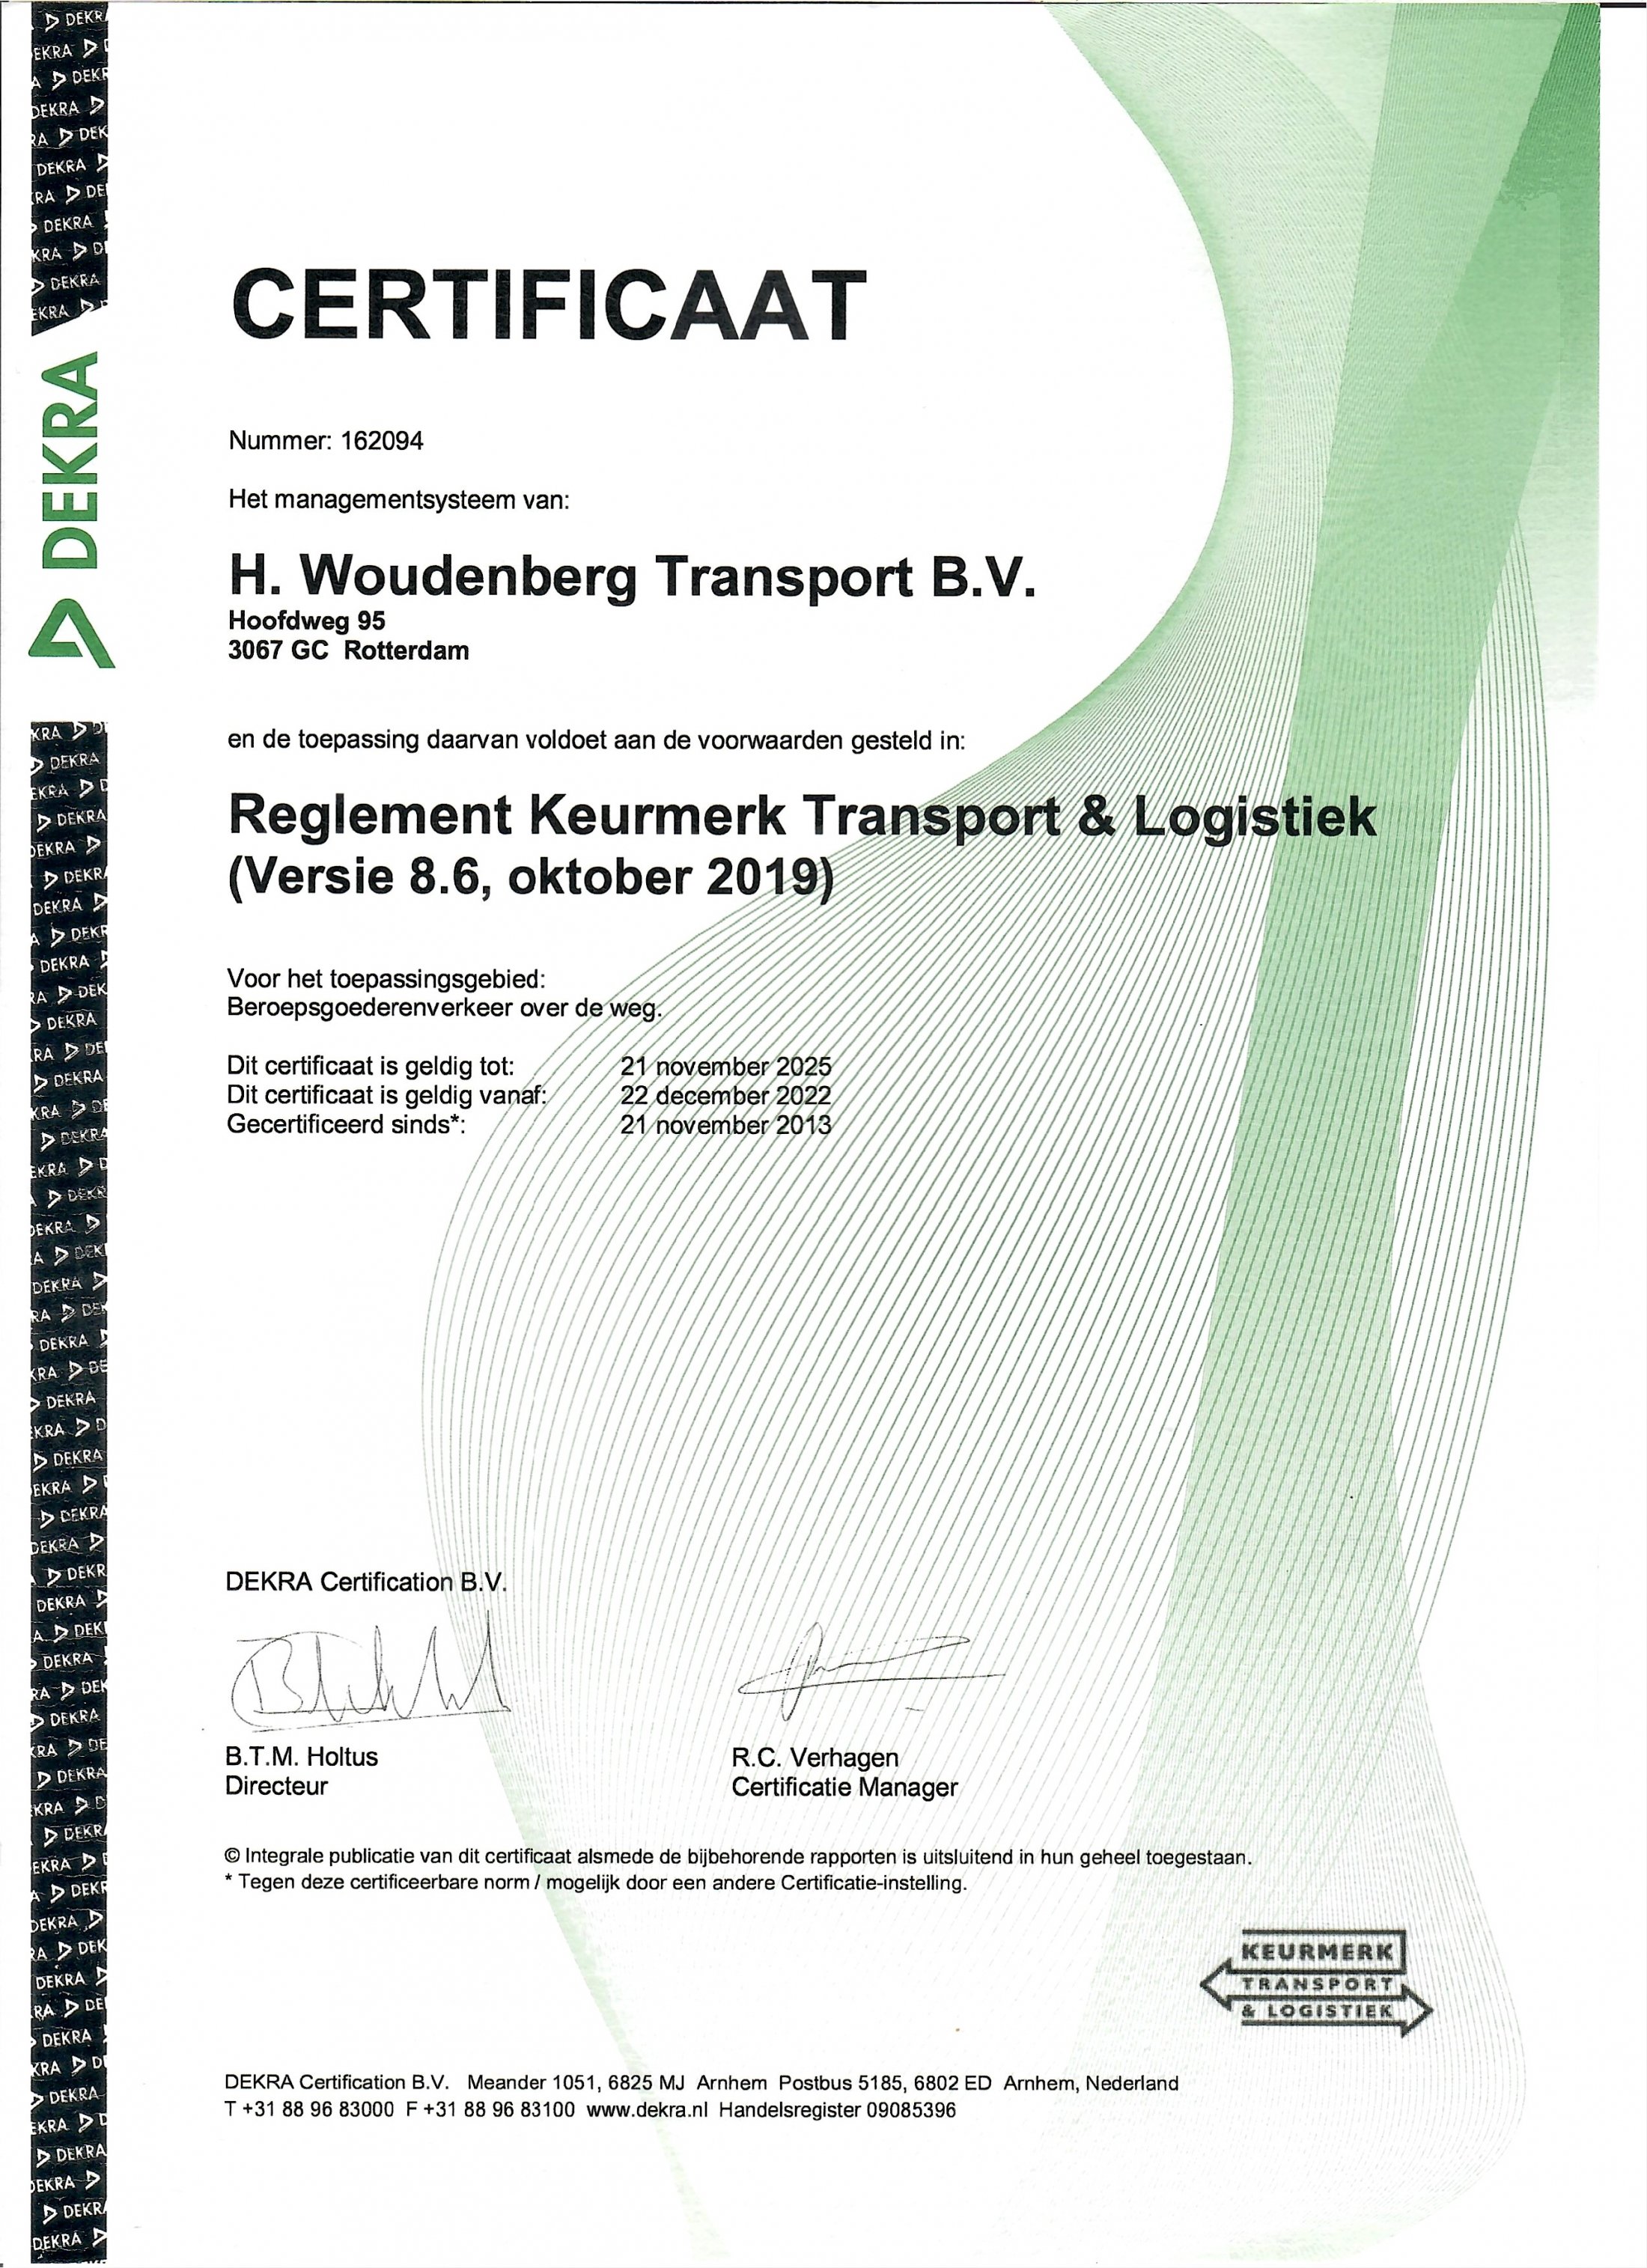 KTL certificaat Woudenberg